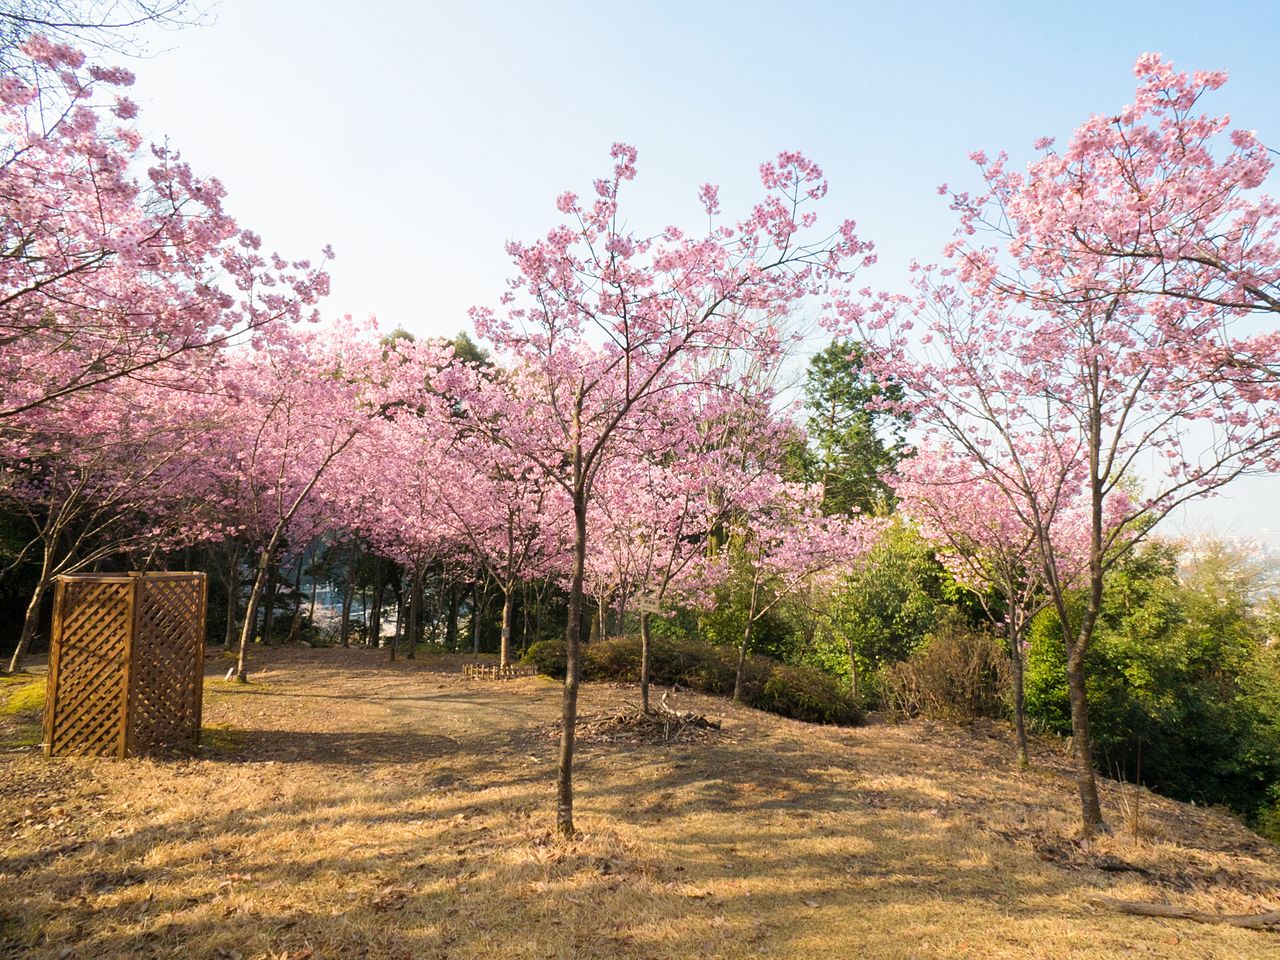 Les cerisiers yôkô du verger tapissent la colline d'une époustouflante couverture rose. 